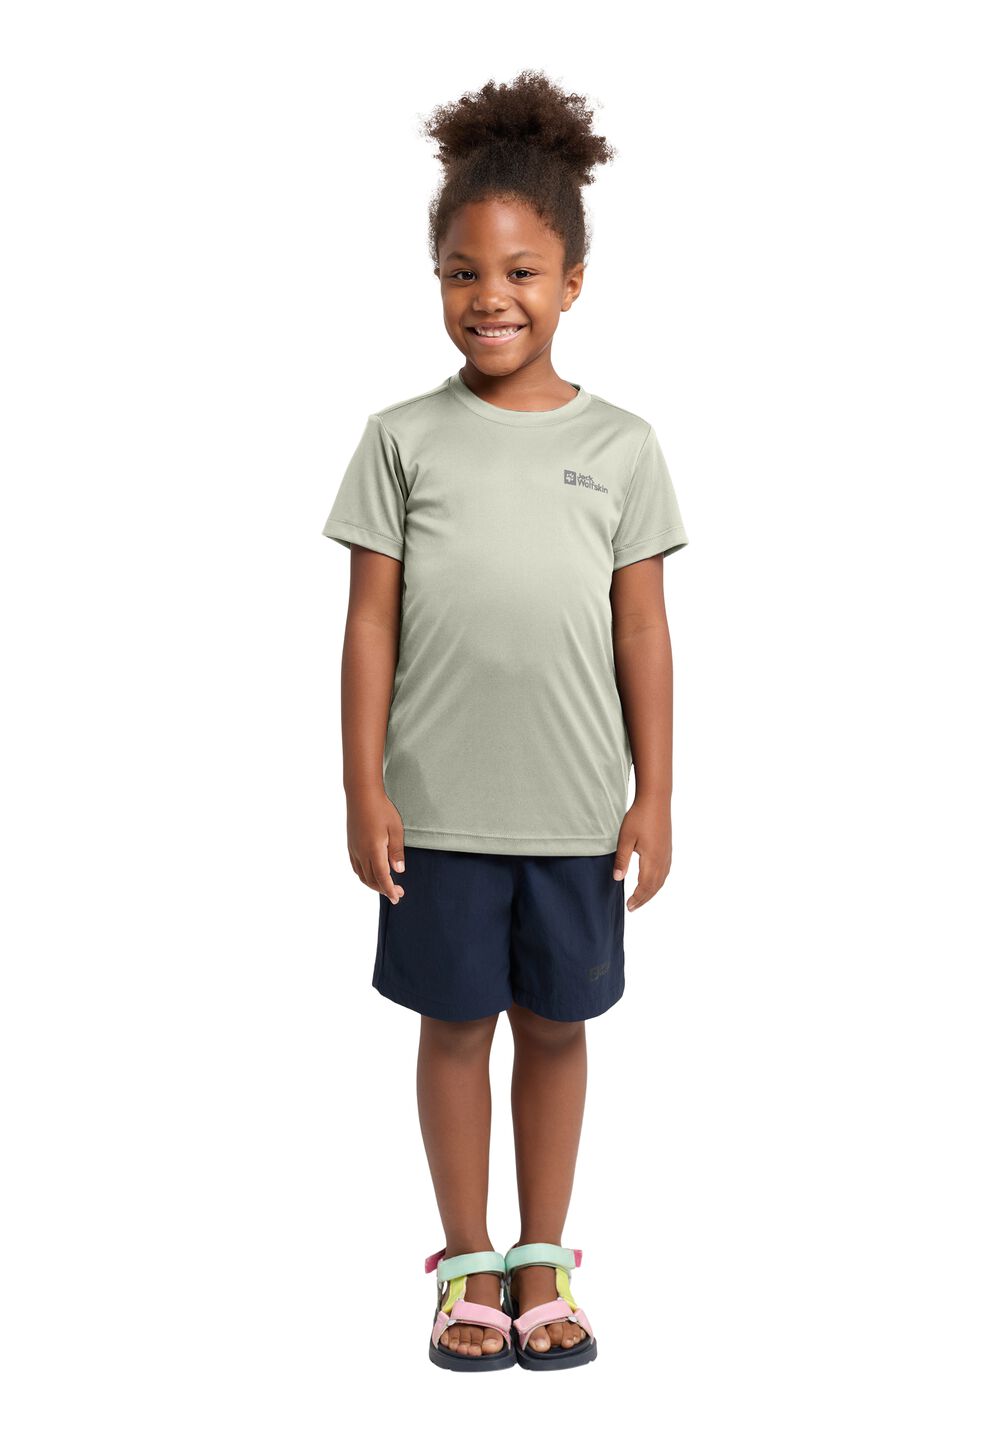 Jack Wolfskin Active Solid T-Shirt Kids Functioneel shirt Kinderen 176 mint leaf mint leaf